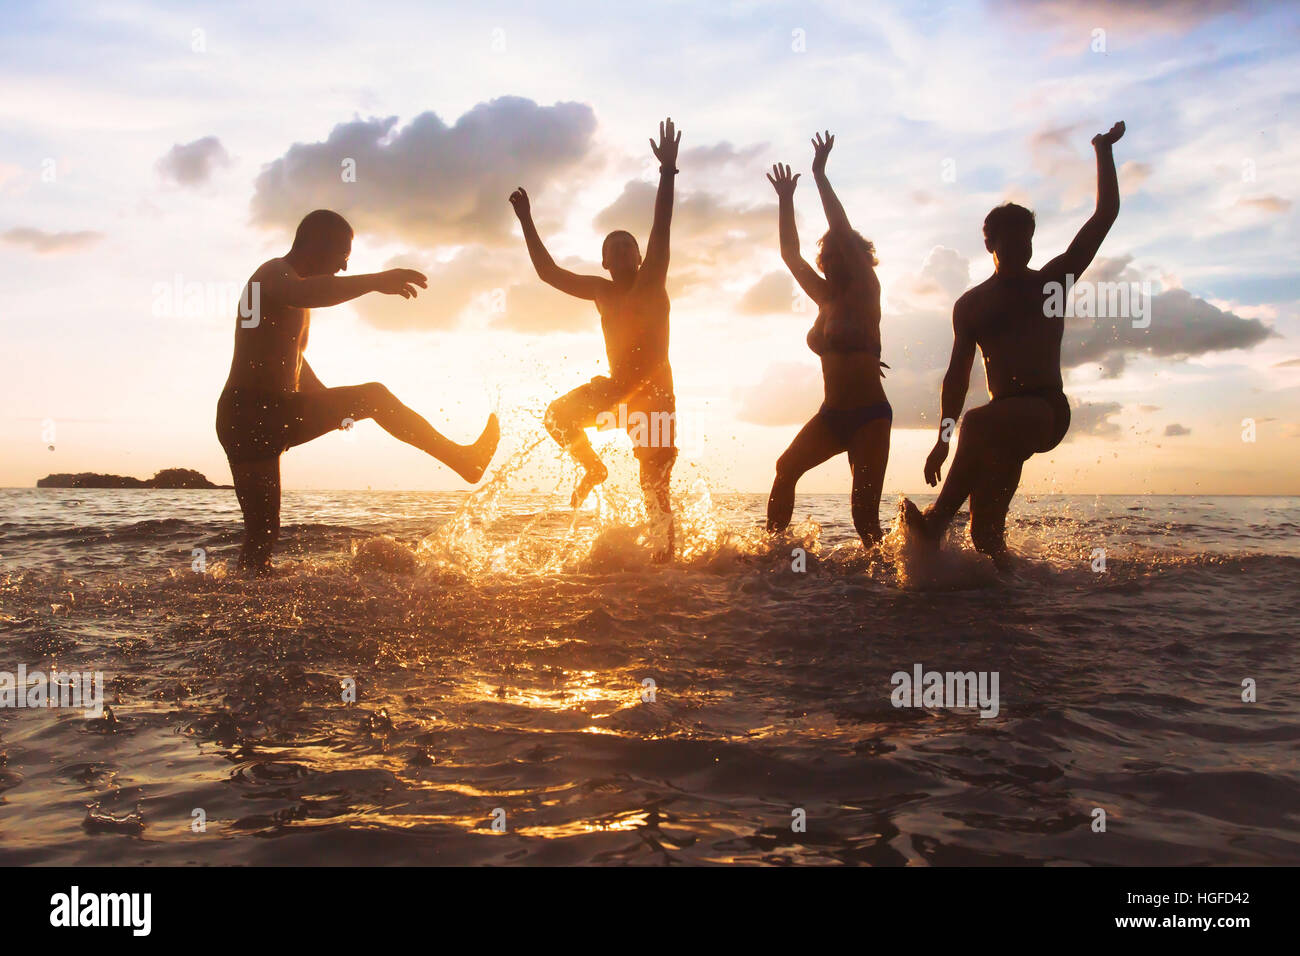 Gruppe der happy Friends Spaß zusammen am Strand bei Sonnenuntergang, springen und tanzen mit Spritzwasser in das Meer, Silhouetten von Menschen Stockfoto